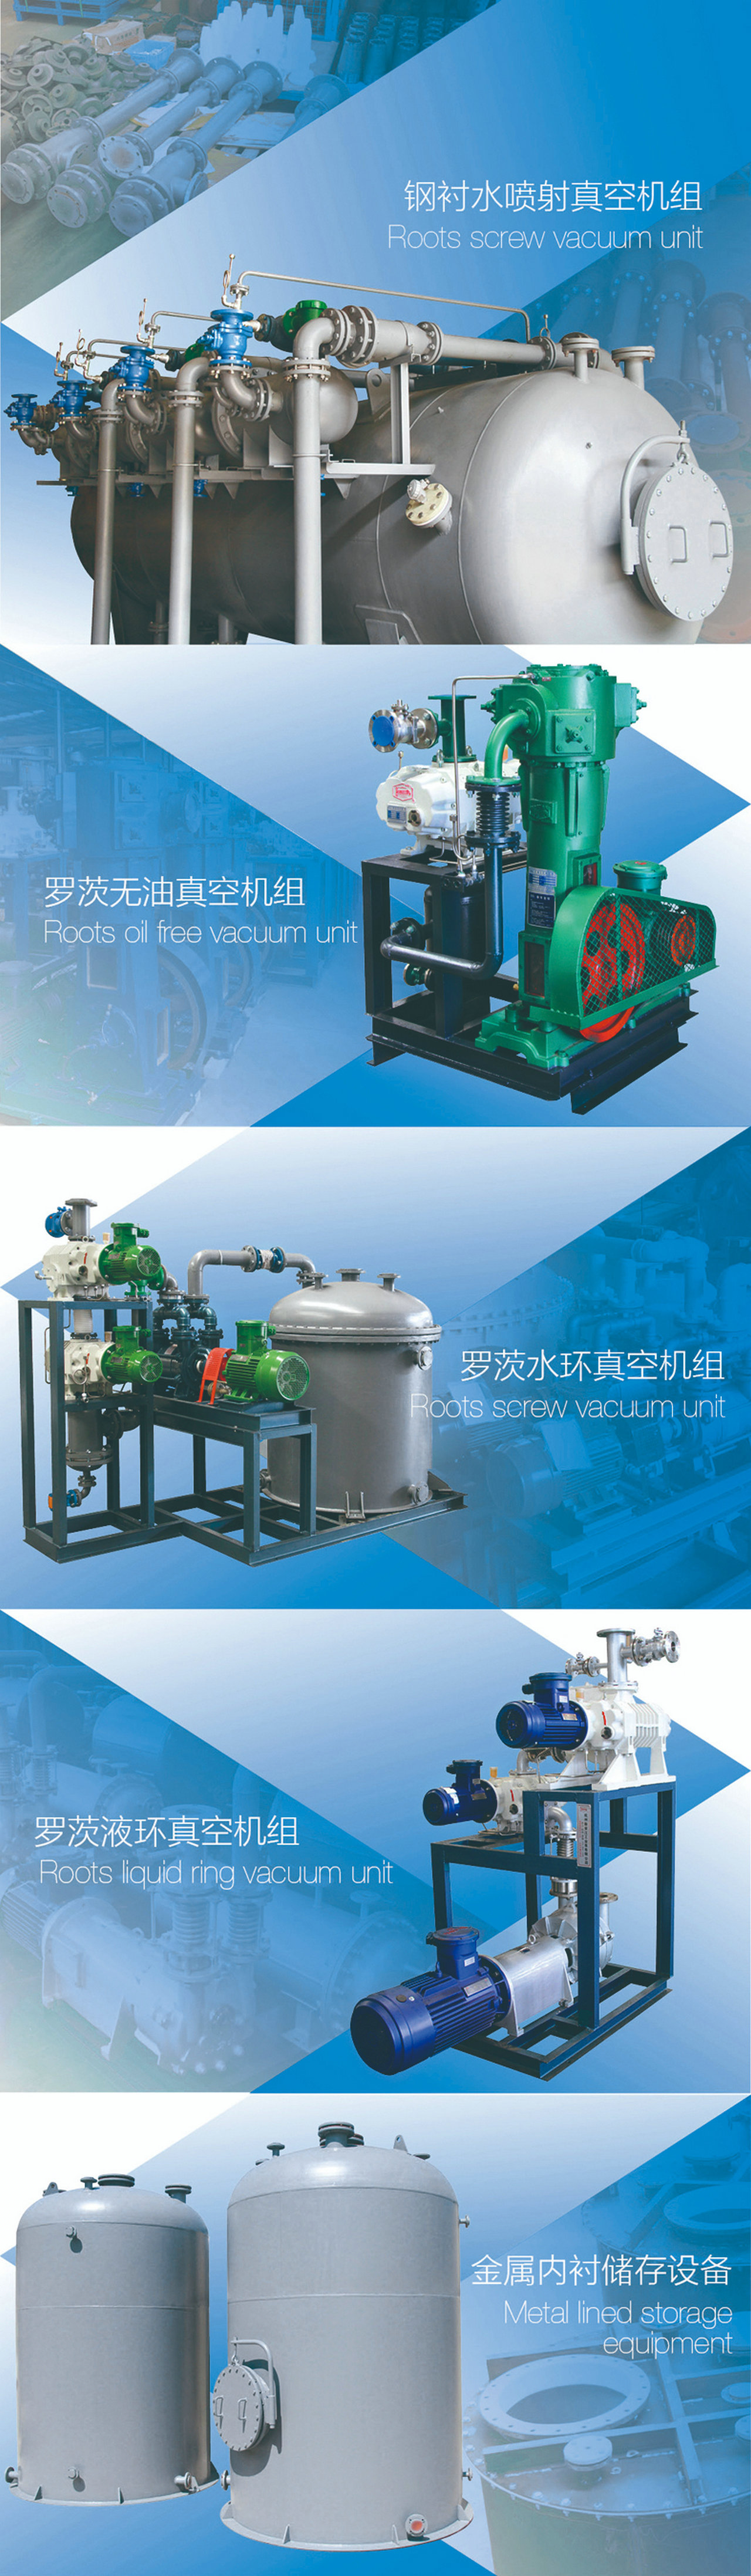 杭州新安江工业泵 (9)